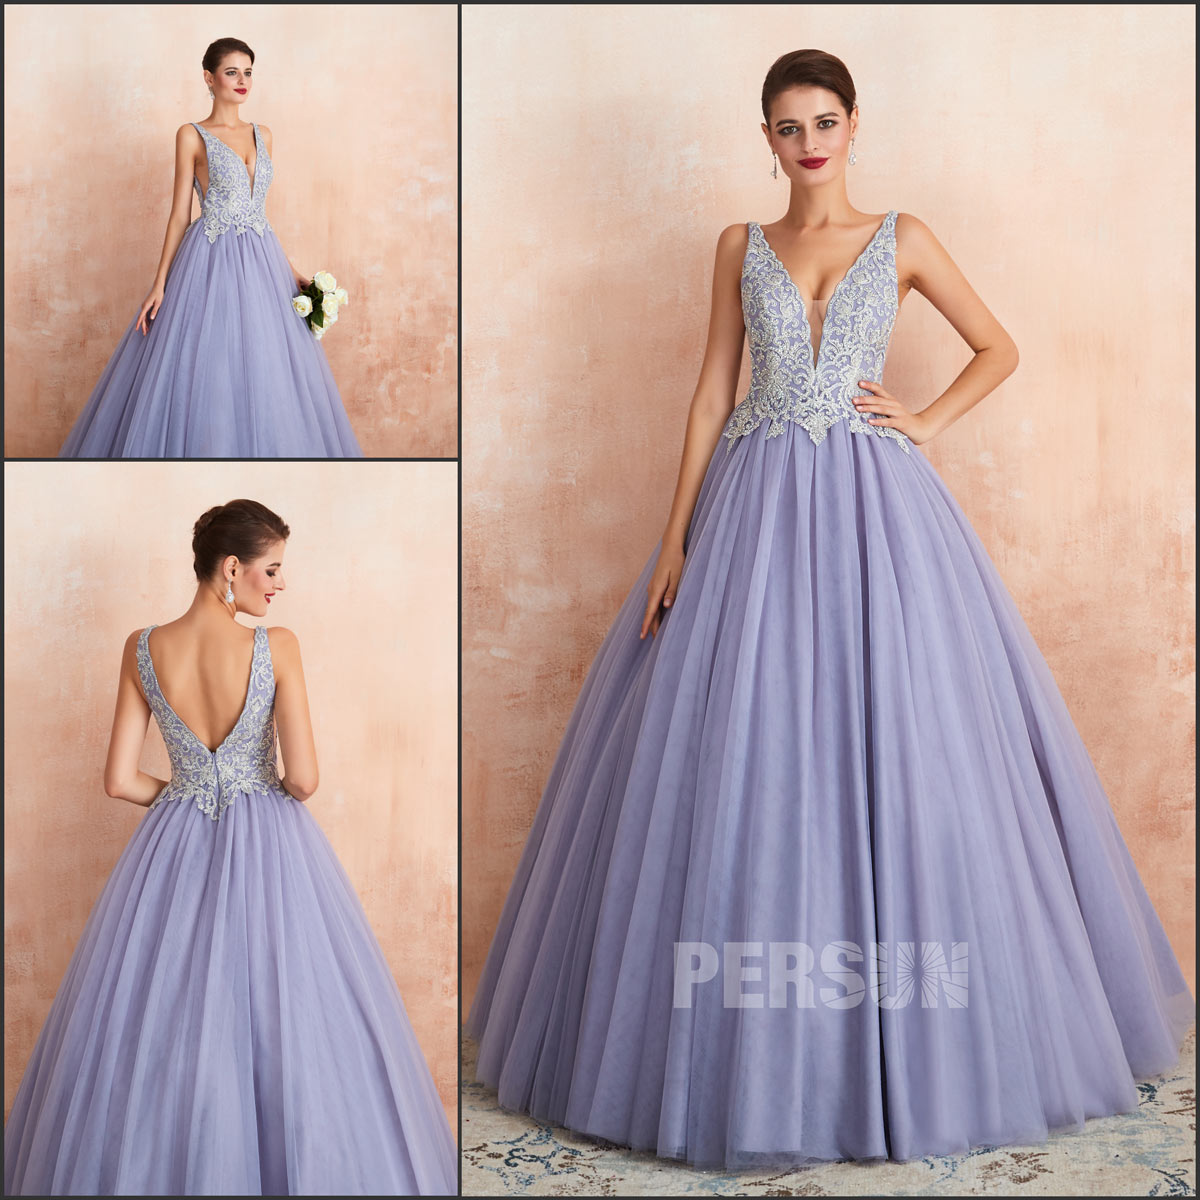 robe princesse pour soirée mariage 2020 thème lavande lilas